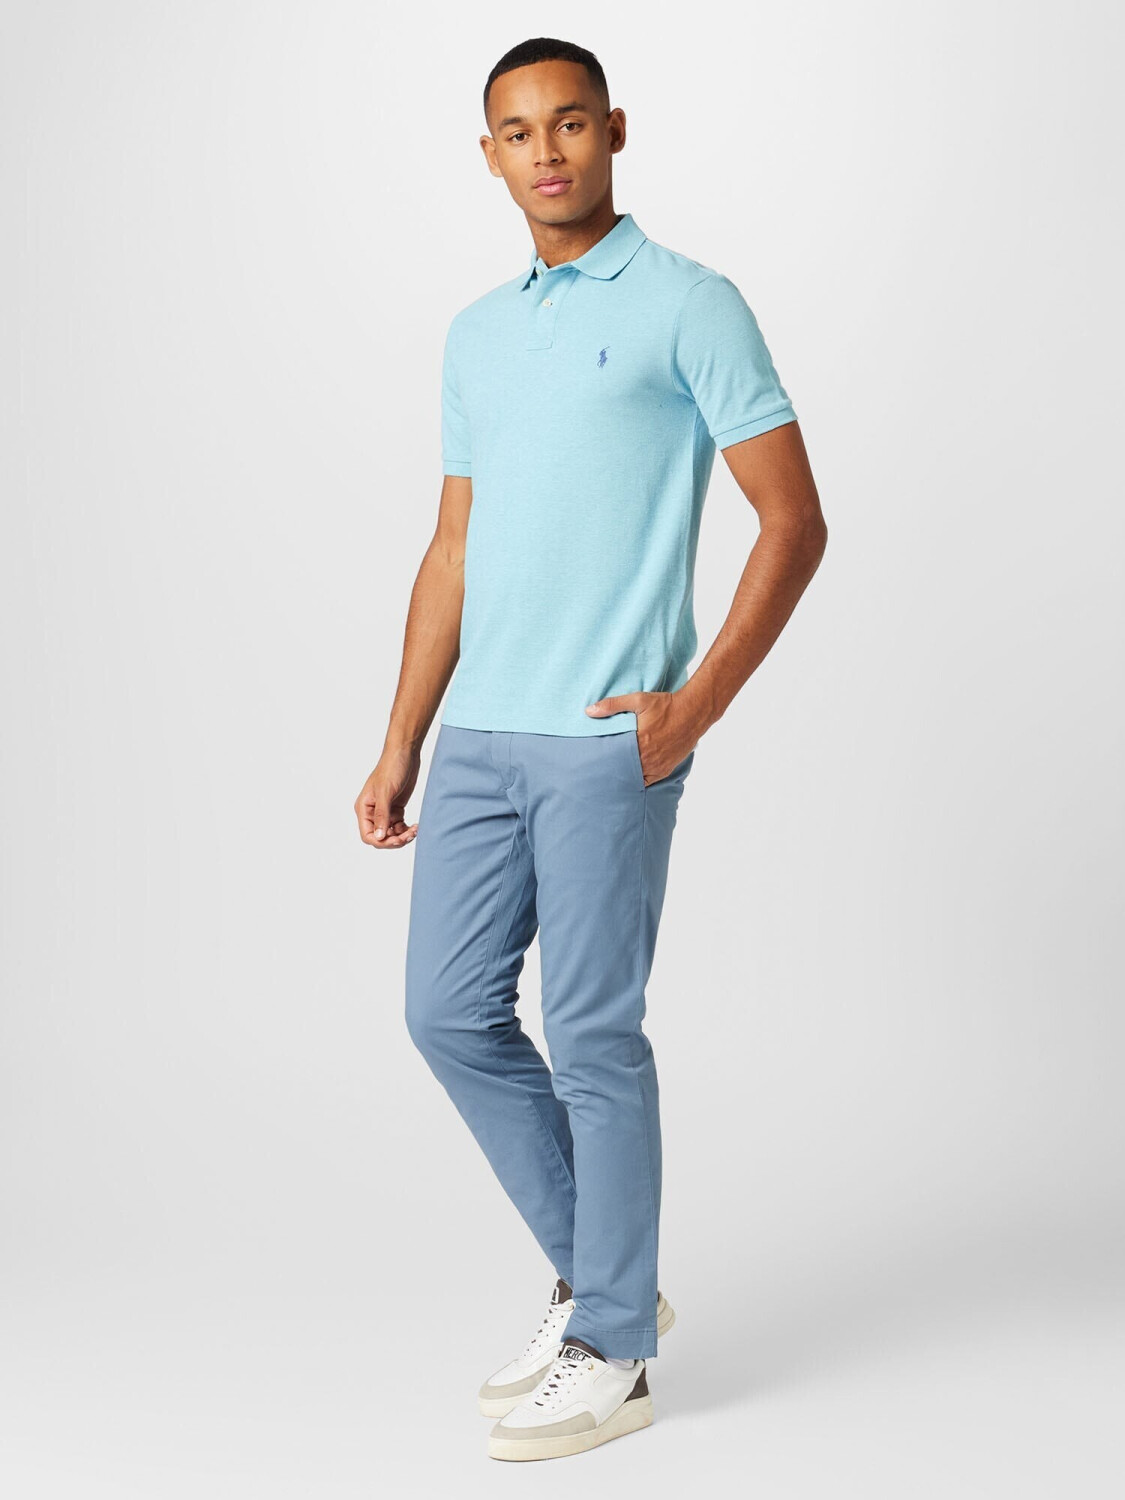 Polo Ralph Lauren Poloshirt (710536856) blue 119,99 | Preisvergleich ab € aqua bei